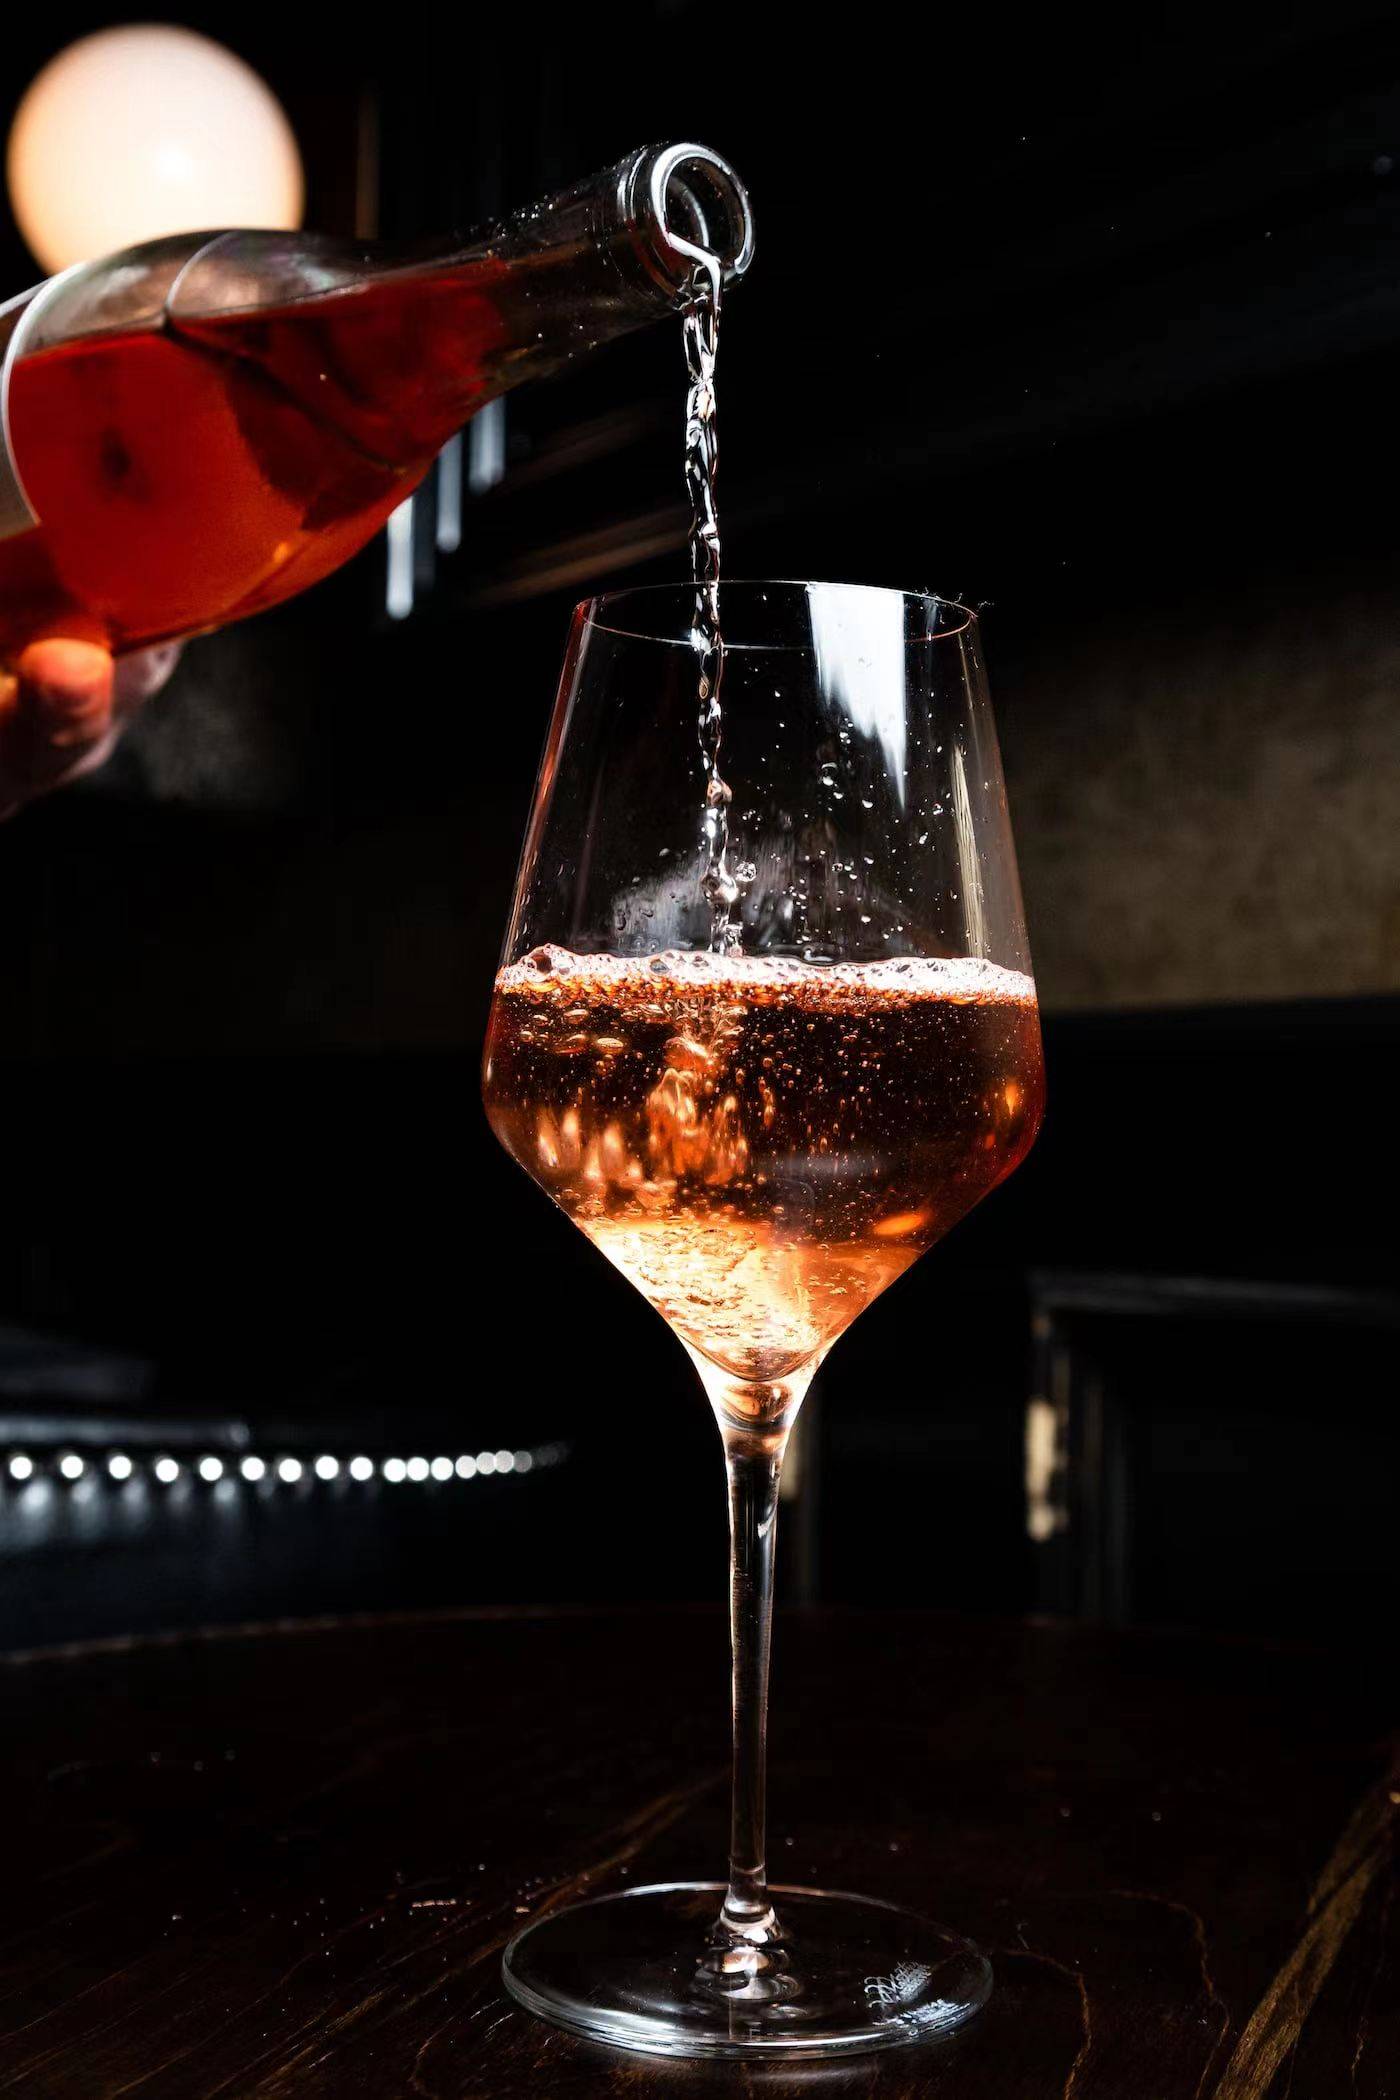 将葡萄酒倒入杯中倾斜45°,最好置于白色背景板下:观察葡萄酒酒液中